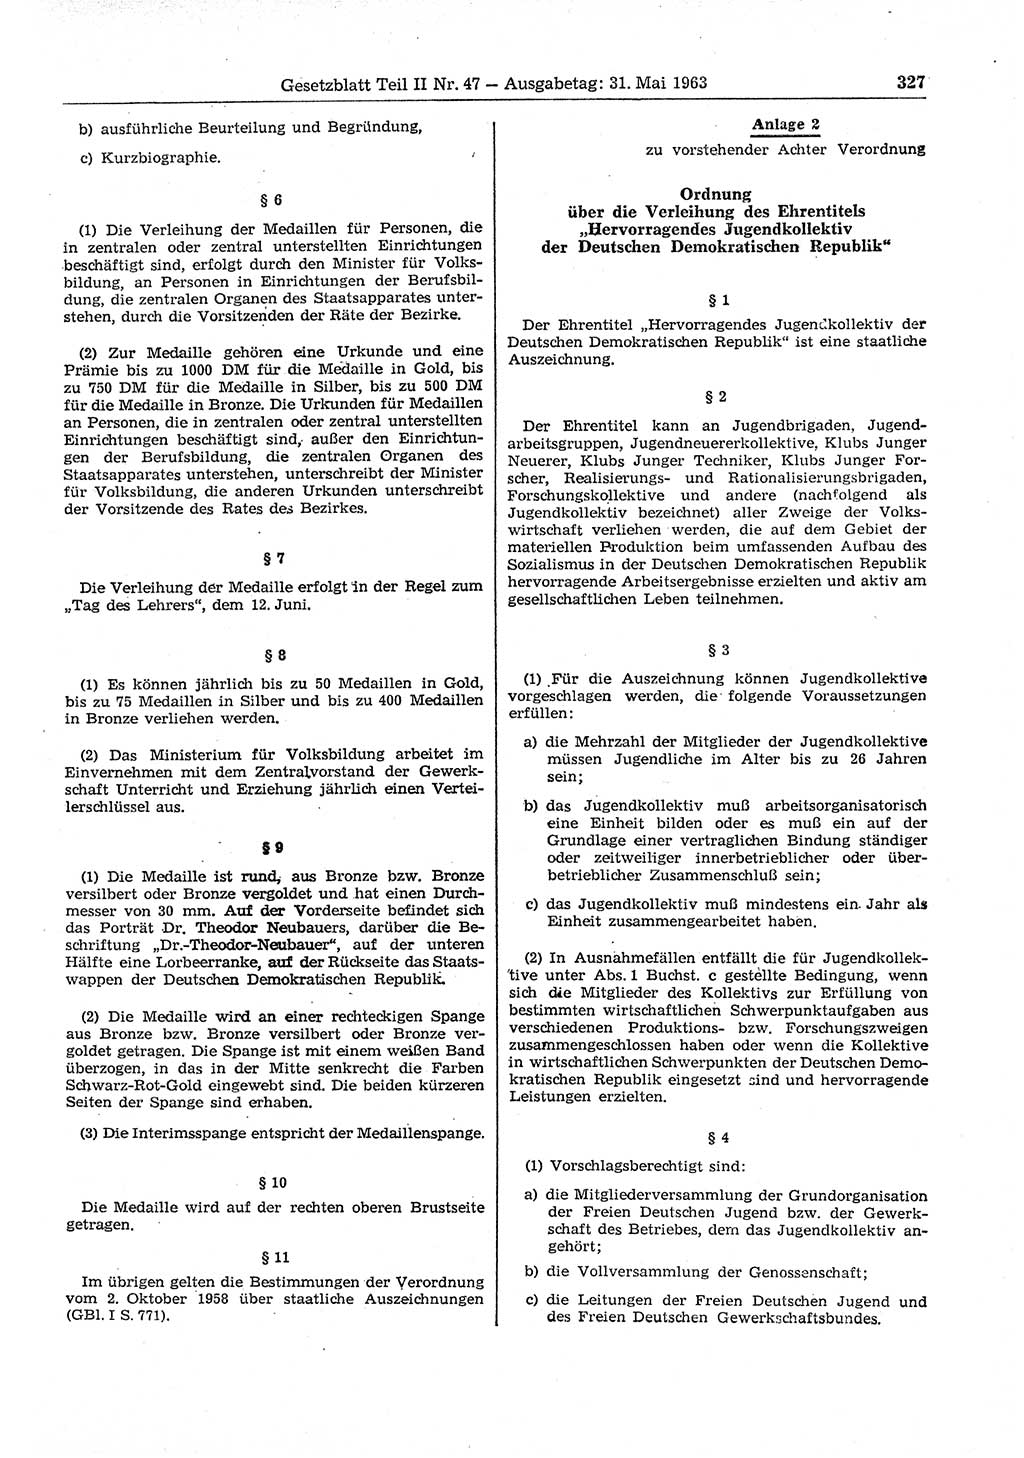 Gesetzblatt (GBl.) der Deutschen Demokratischen Republik (DDR) Teil ⅠⅠ 1963, Seite 327 (GBl. DDR ⅠⅠ 1963, S. 327)